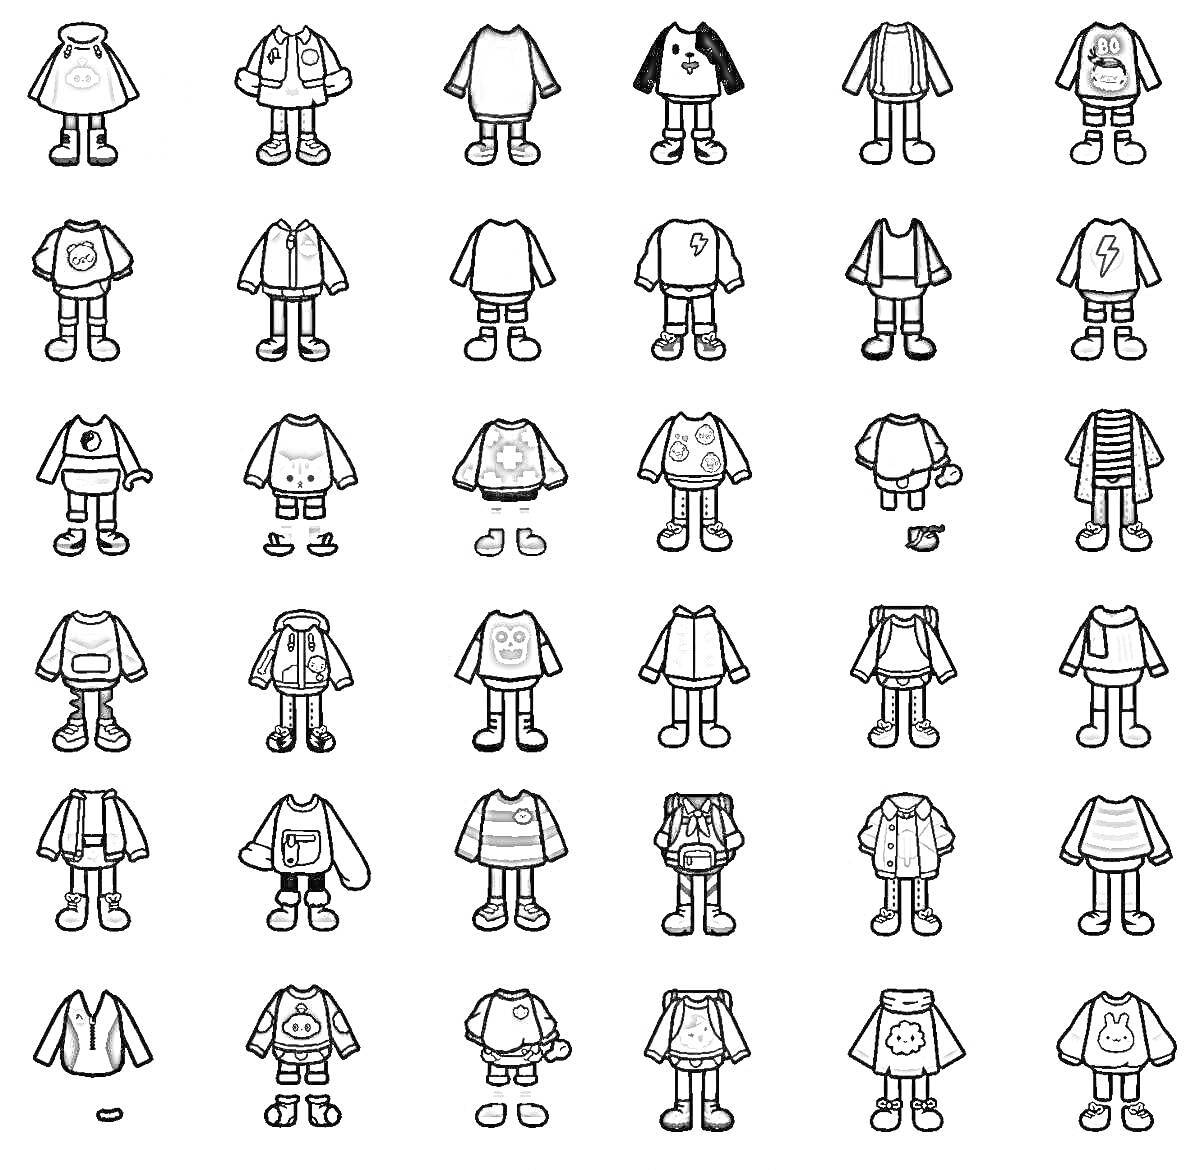 Раскраска Коллекция одежды из игры Toca Boca – различные наряды, включая топы, куртки, шорты, юбки, платья, брюки и обувь